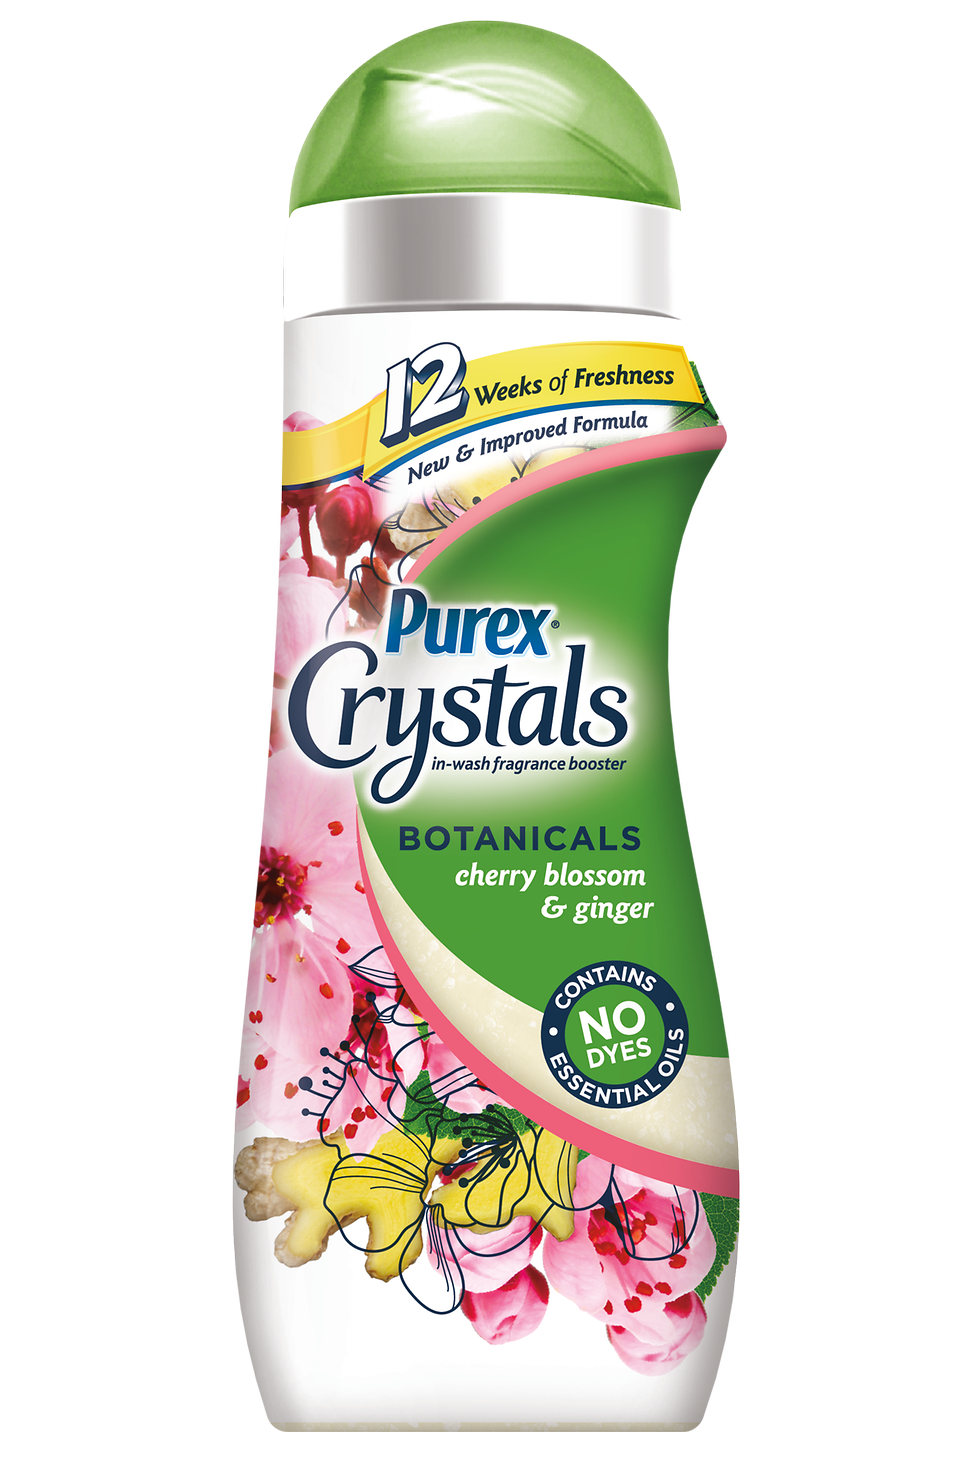 Purex Crystals Botanicals